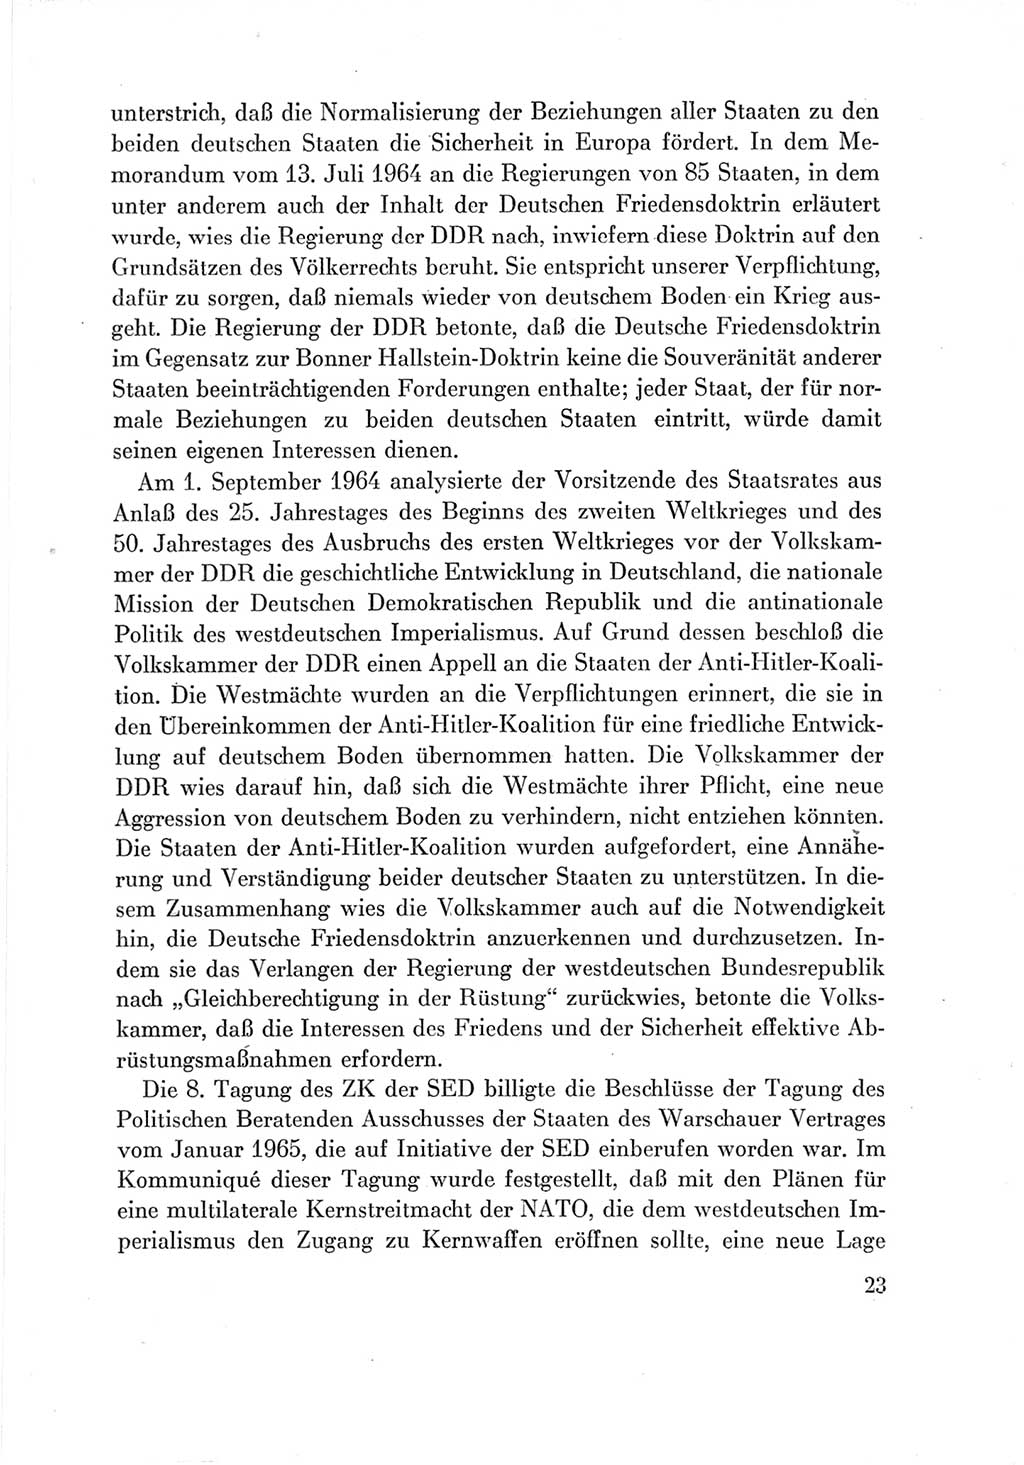 Protokoll der Verhandlungen des Ⅶ. Parteitages der Sozialistischen Einheitspartei Deutschlands (SED) [Deutsche Demokratische Republik (DDR)] 1967, Band Ⅳ, Seite 23 (Prot. Verh. Ⅶ. PT SED DDR 1967, Bd. Ⅳ, S. 23)